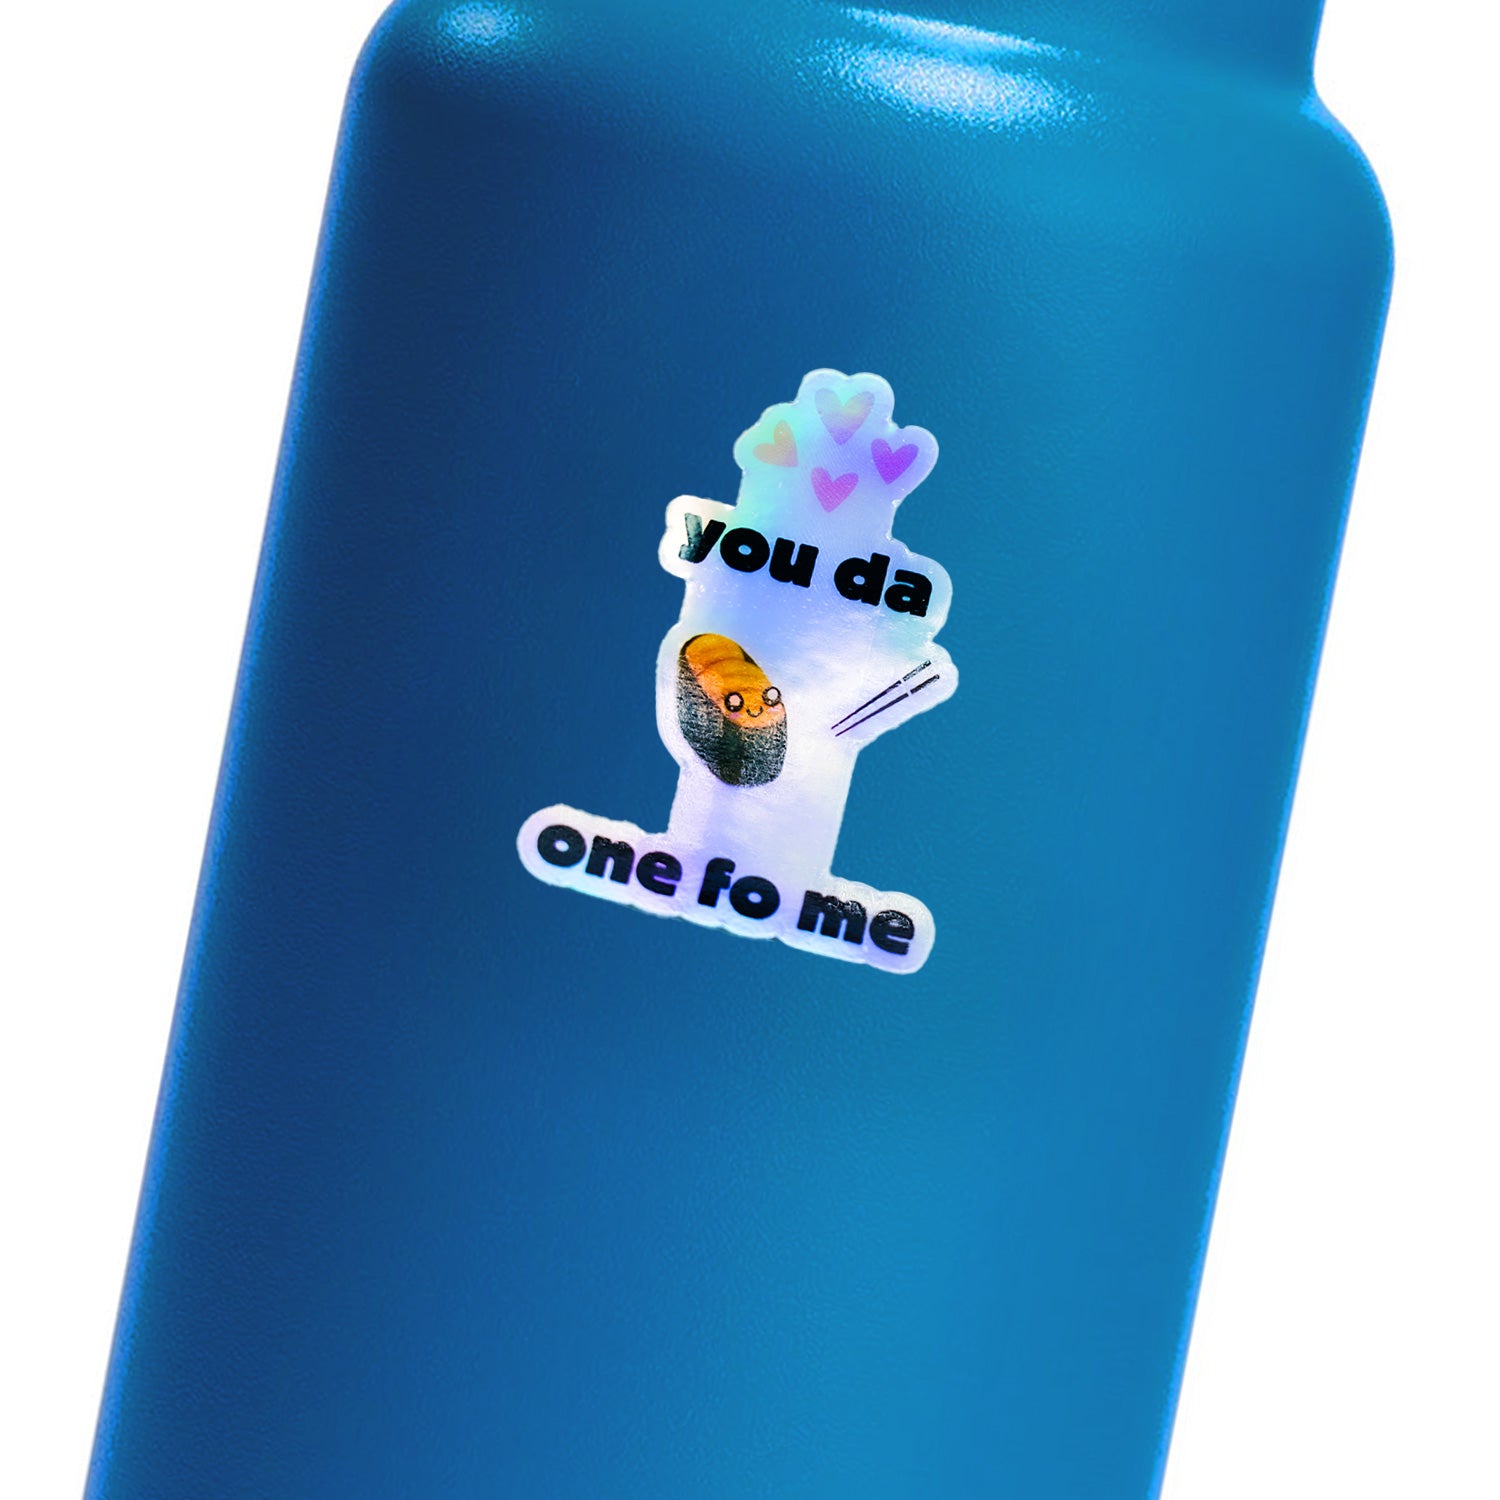 "You Da UNI One Fo Me" Holographic Sticker